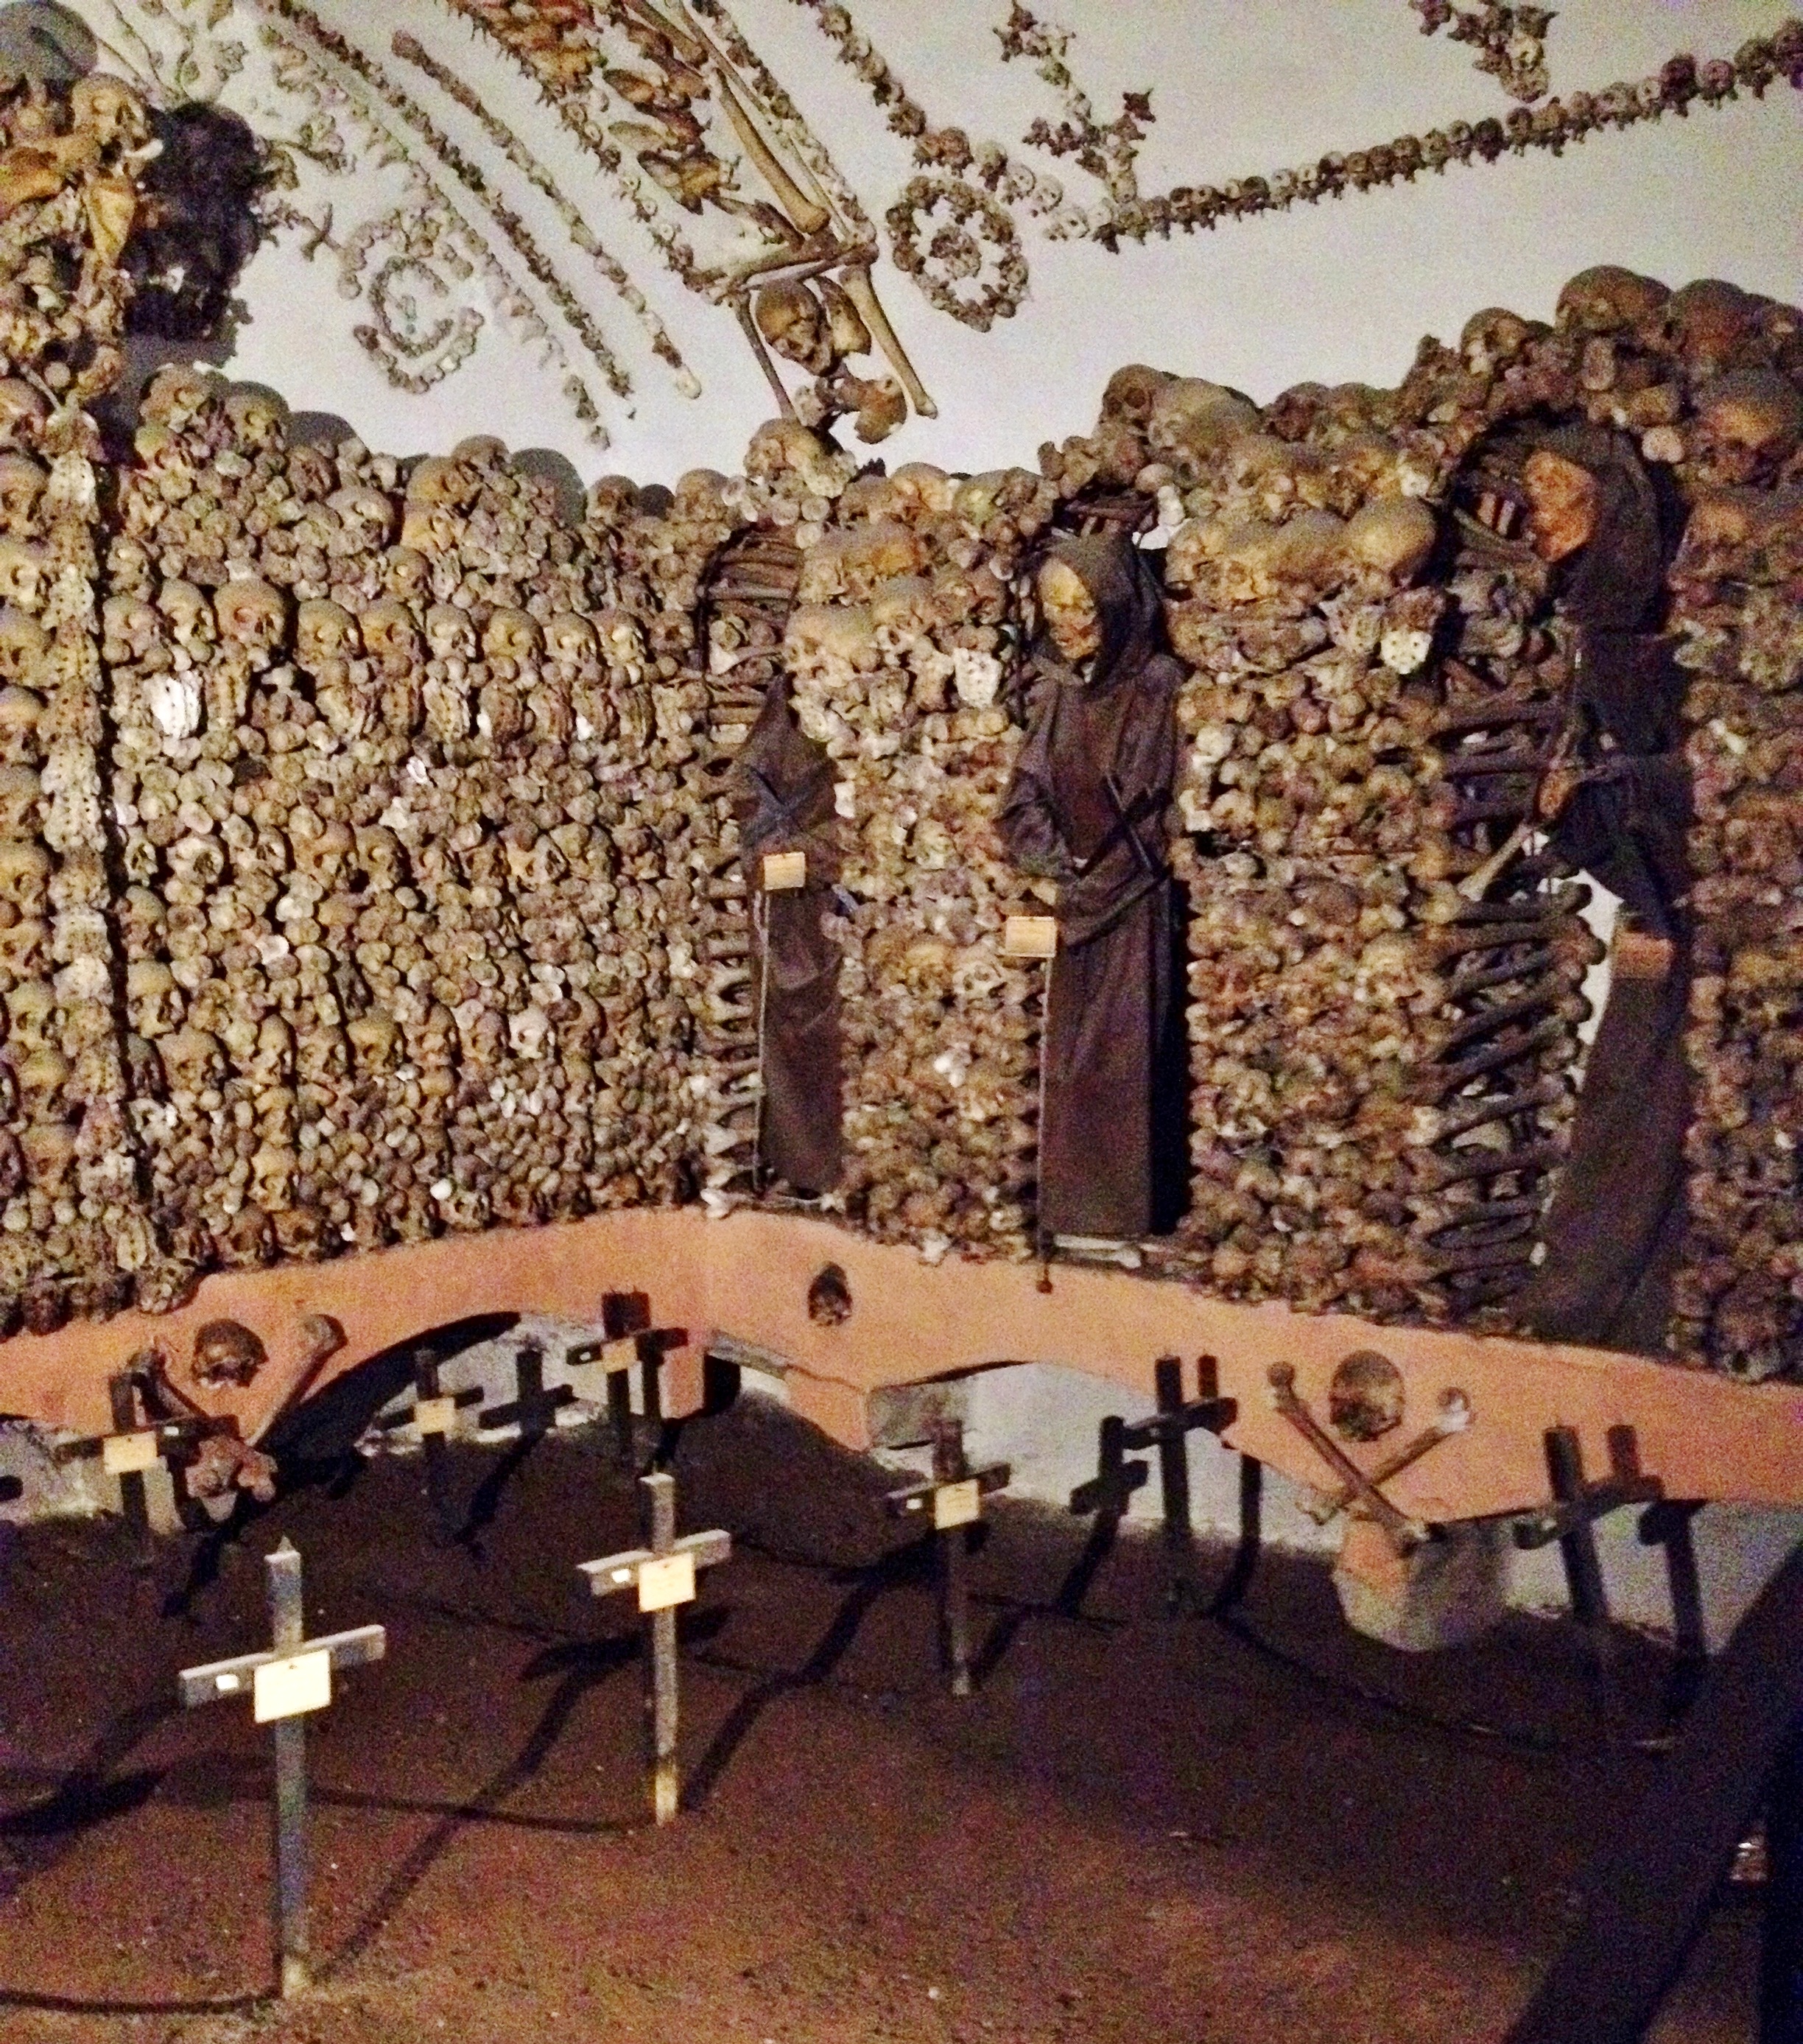 Skull bones in Capuchin Crypt, Rome,